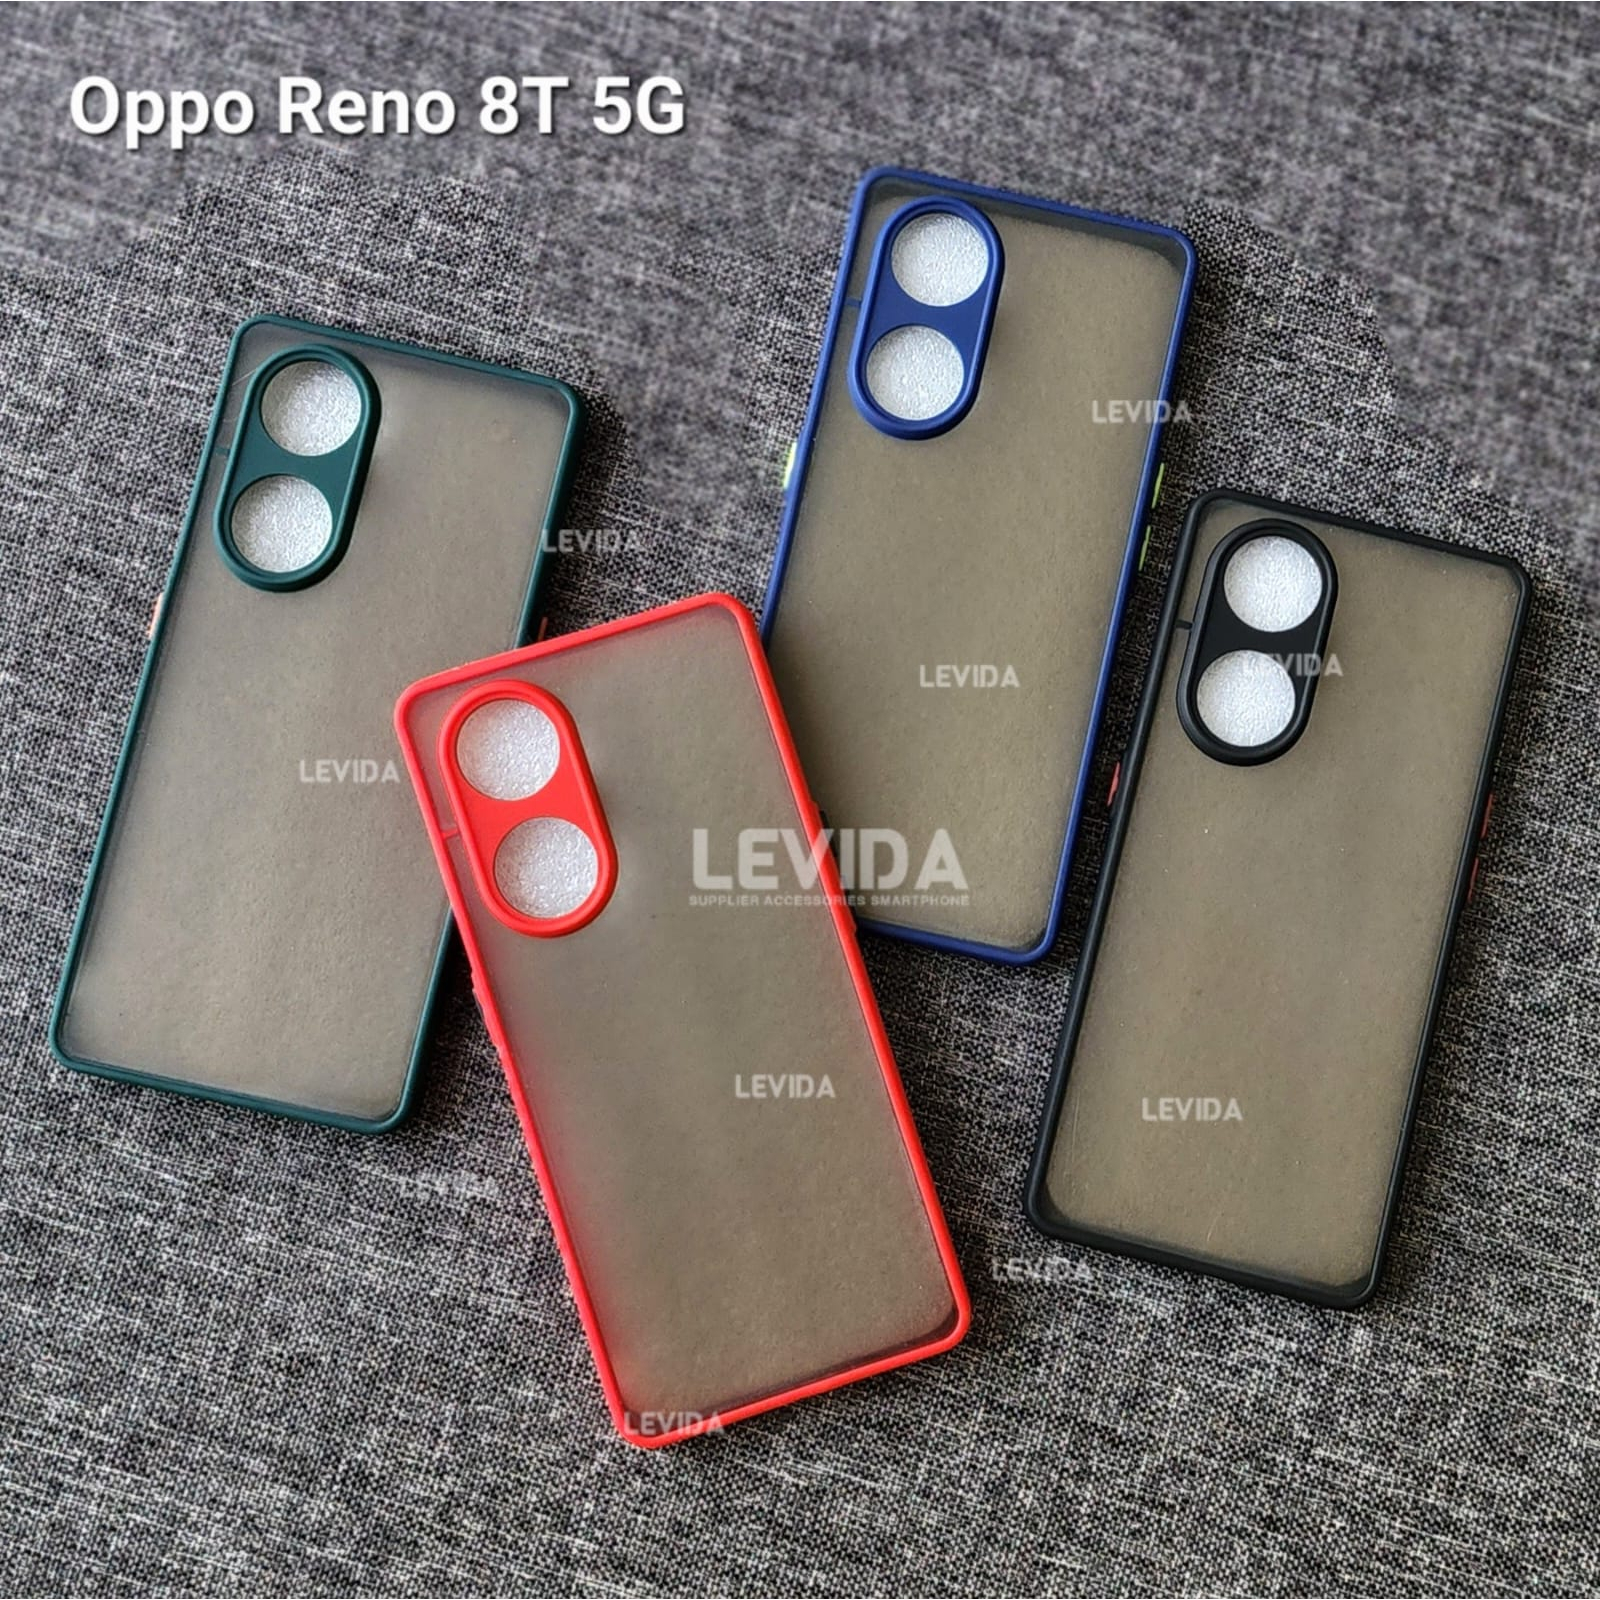 Oppo Reno 8t 5g Case Aero Dove Case Matte Case Mychoice Casing Oppo Reno 8t 5g